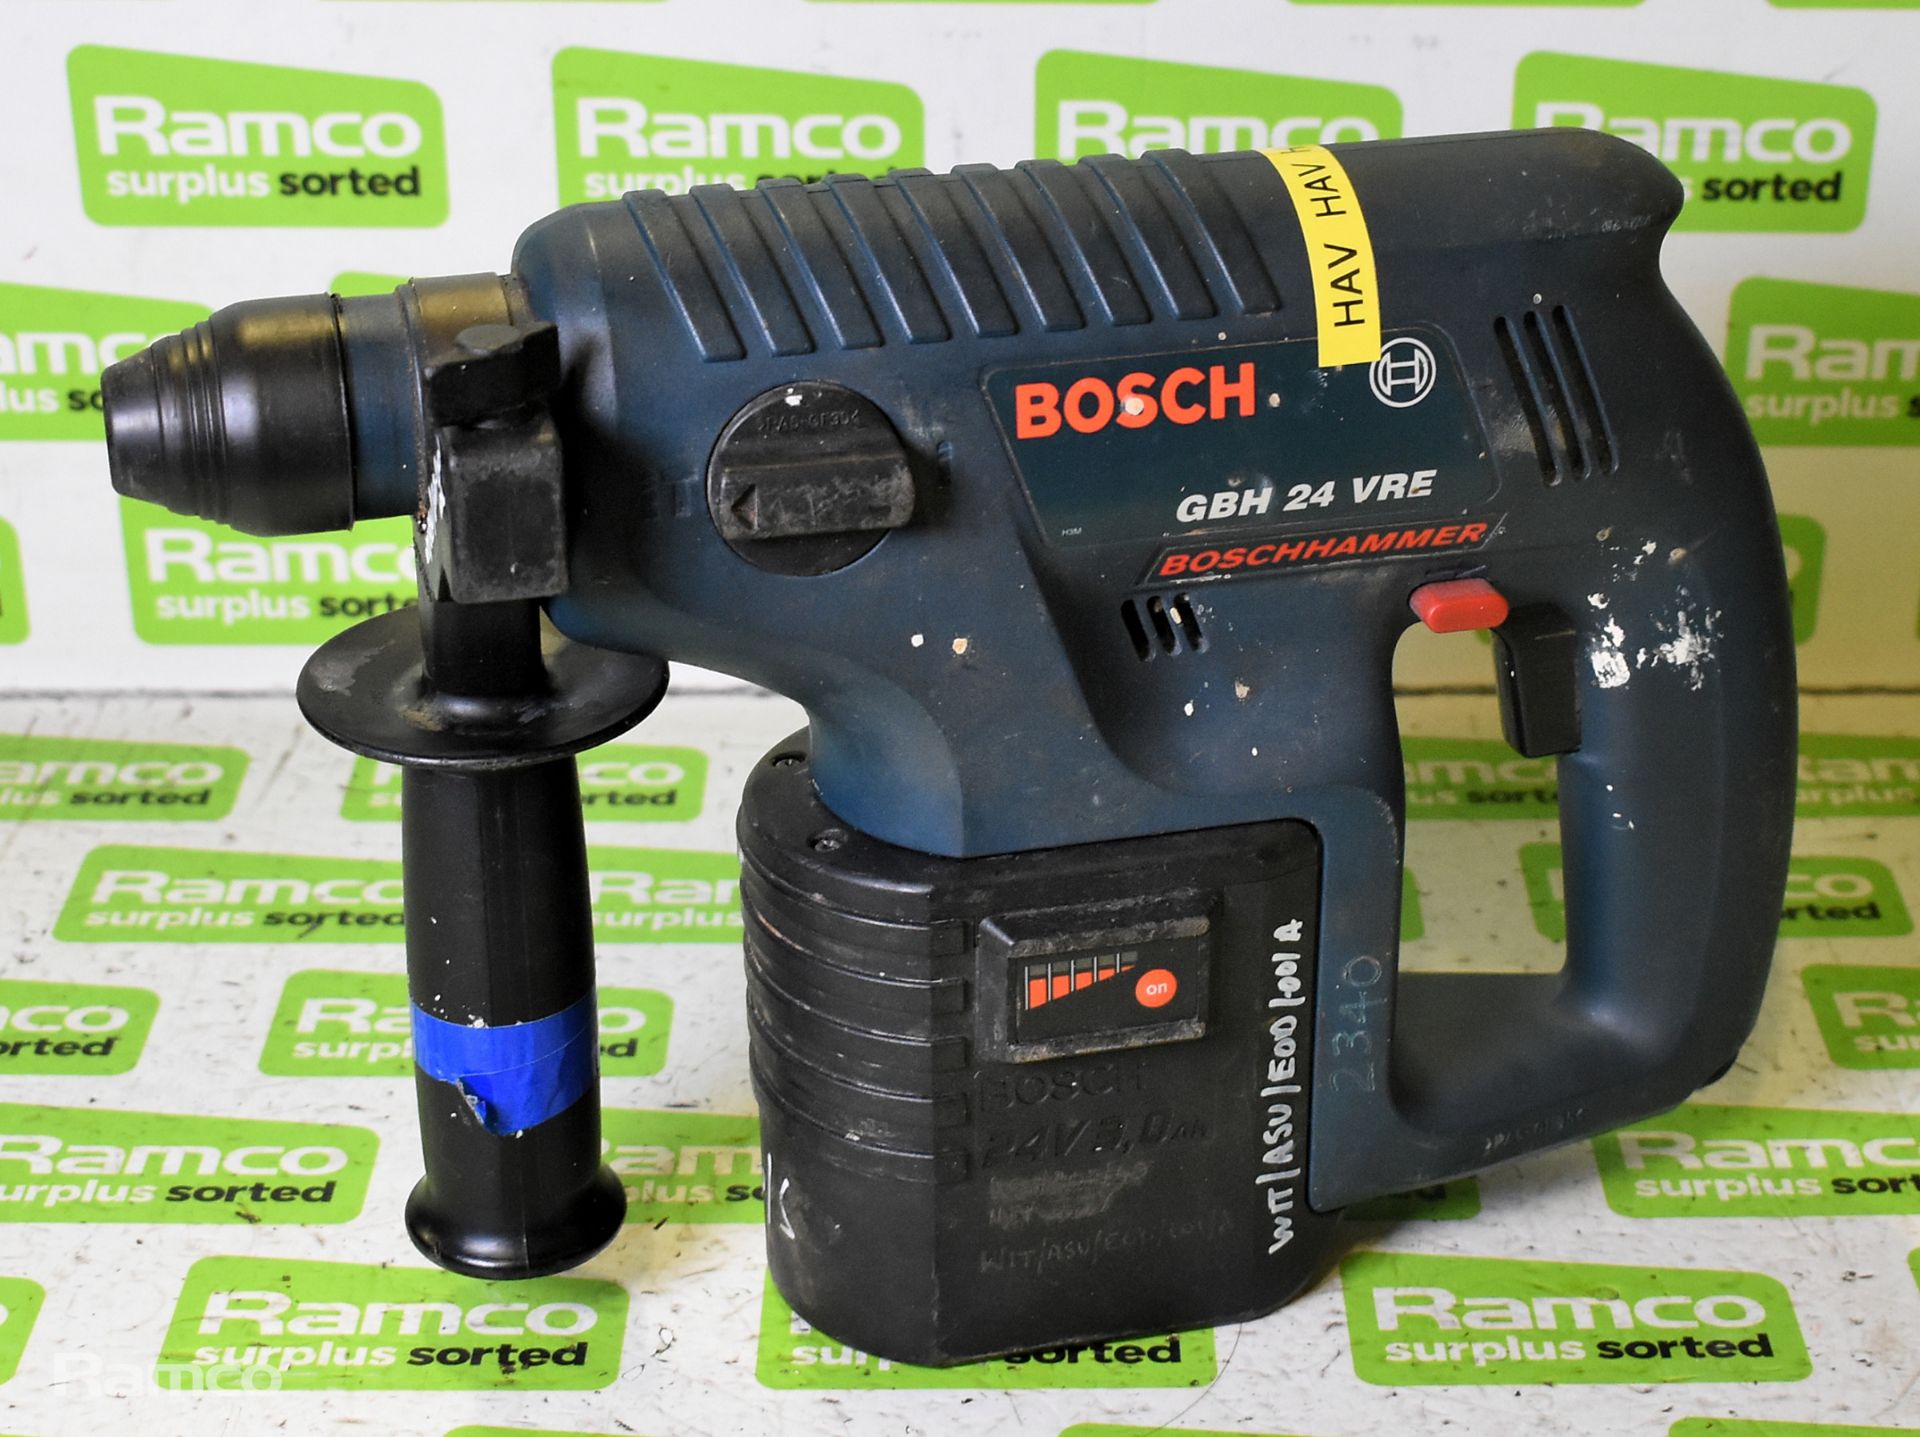 Makita HHR2450 110V electric rotary hammer drill & Bosch Hammer GBH 24 VRE 24V cordless drill - Image 7 of 10